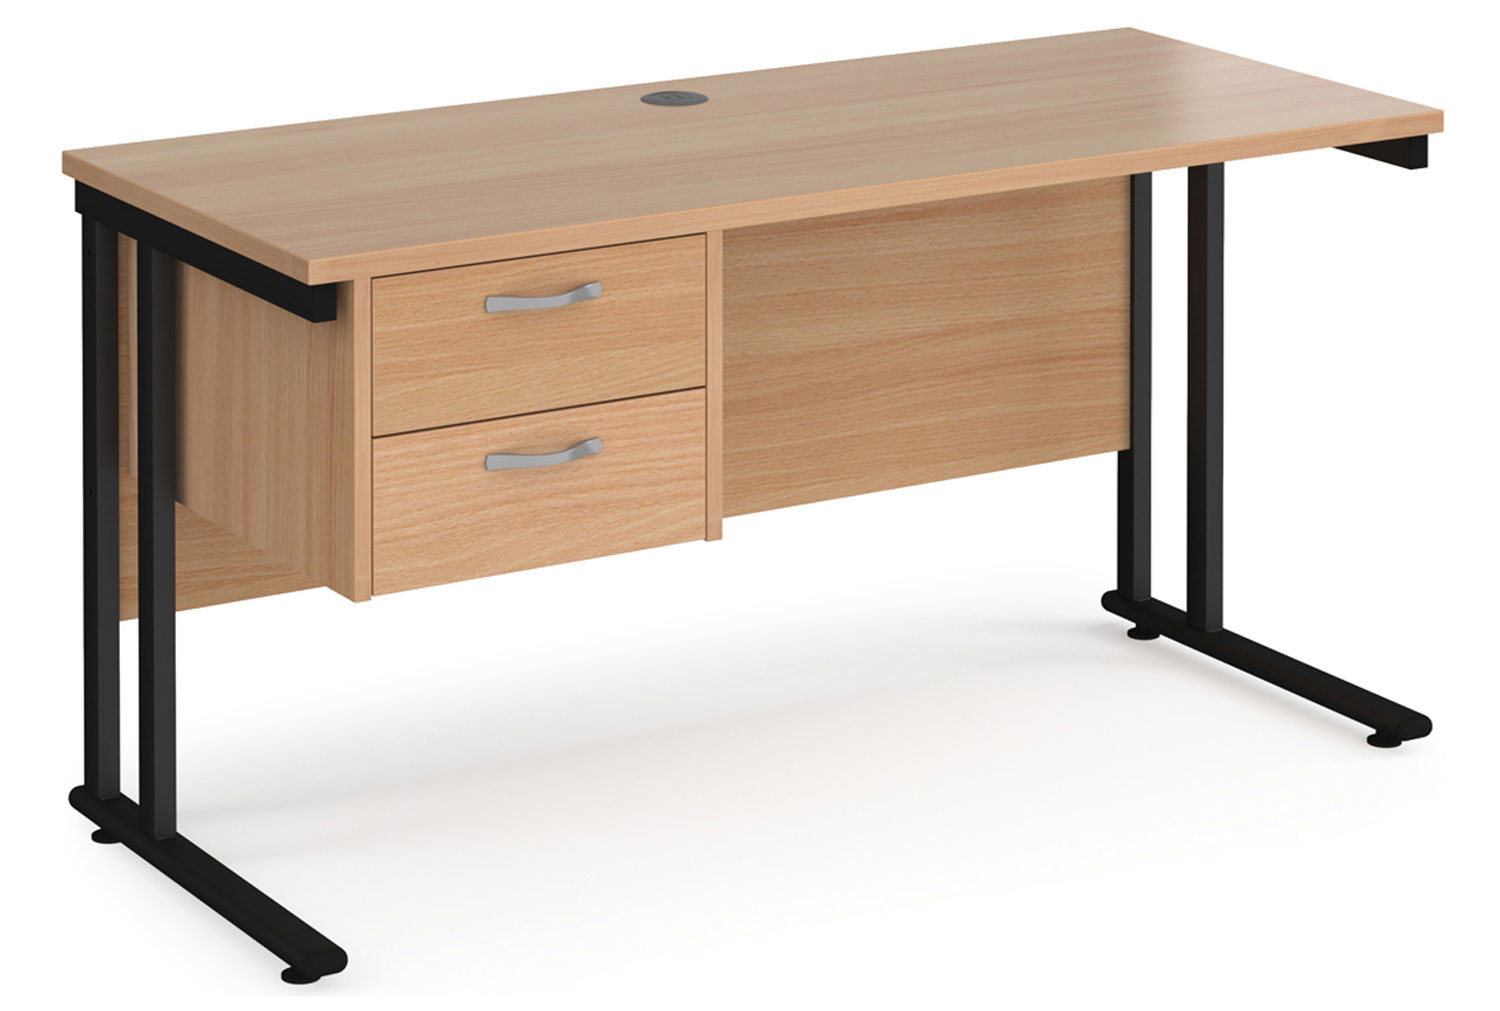 Value Line Deluxe C-Leg Narrow Rectangular Office Desk 2 Drawers (Black Legs), 140wx60dx73h (cm), Beech